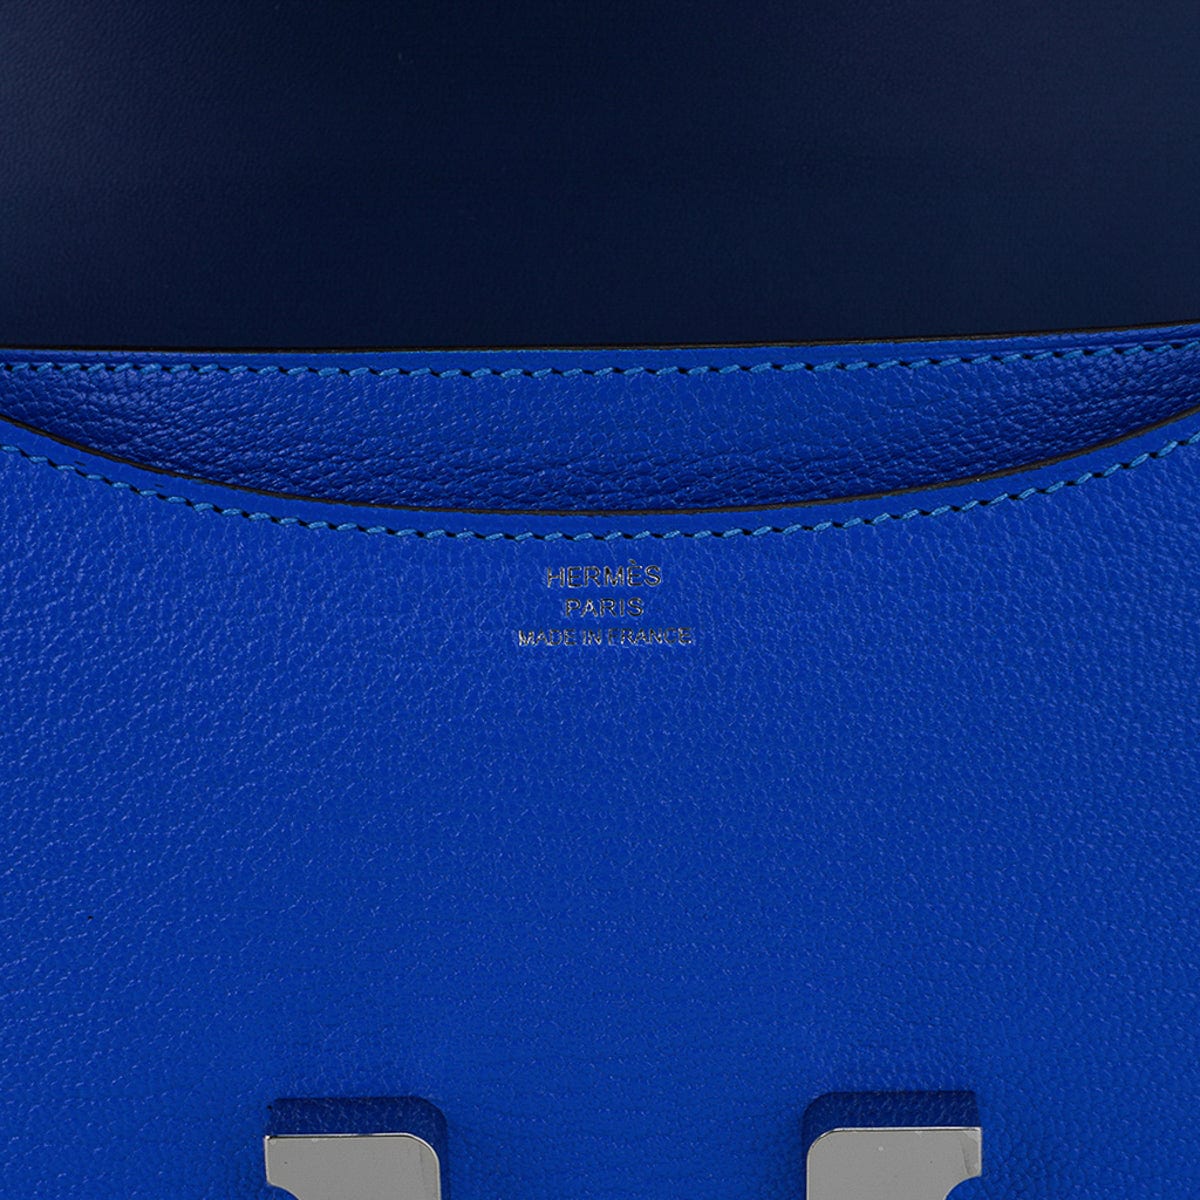 Hermes Constance 18 Bleu Electric Chevre Palladium Hardware – Madison  Avenue Couture